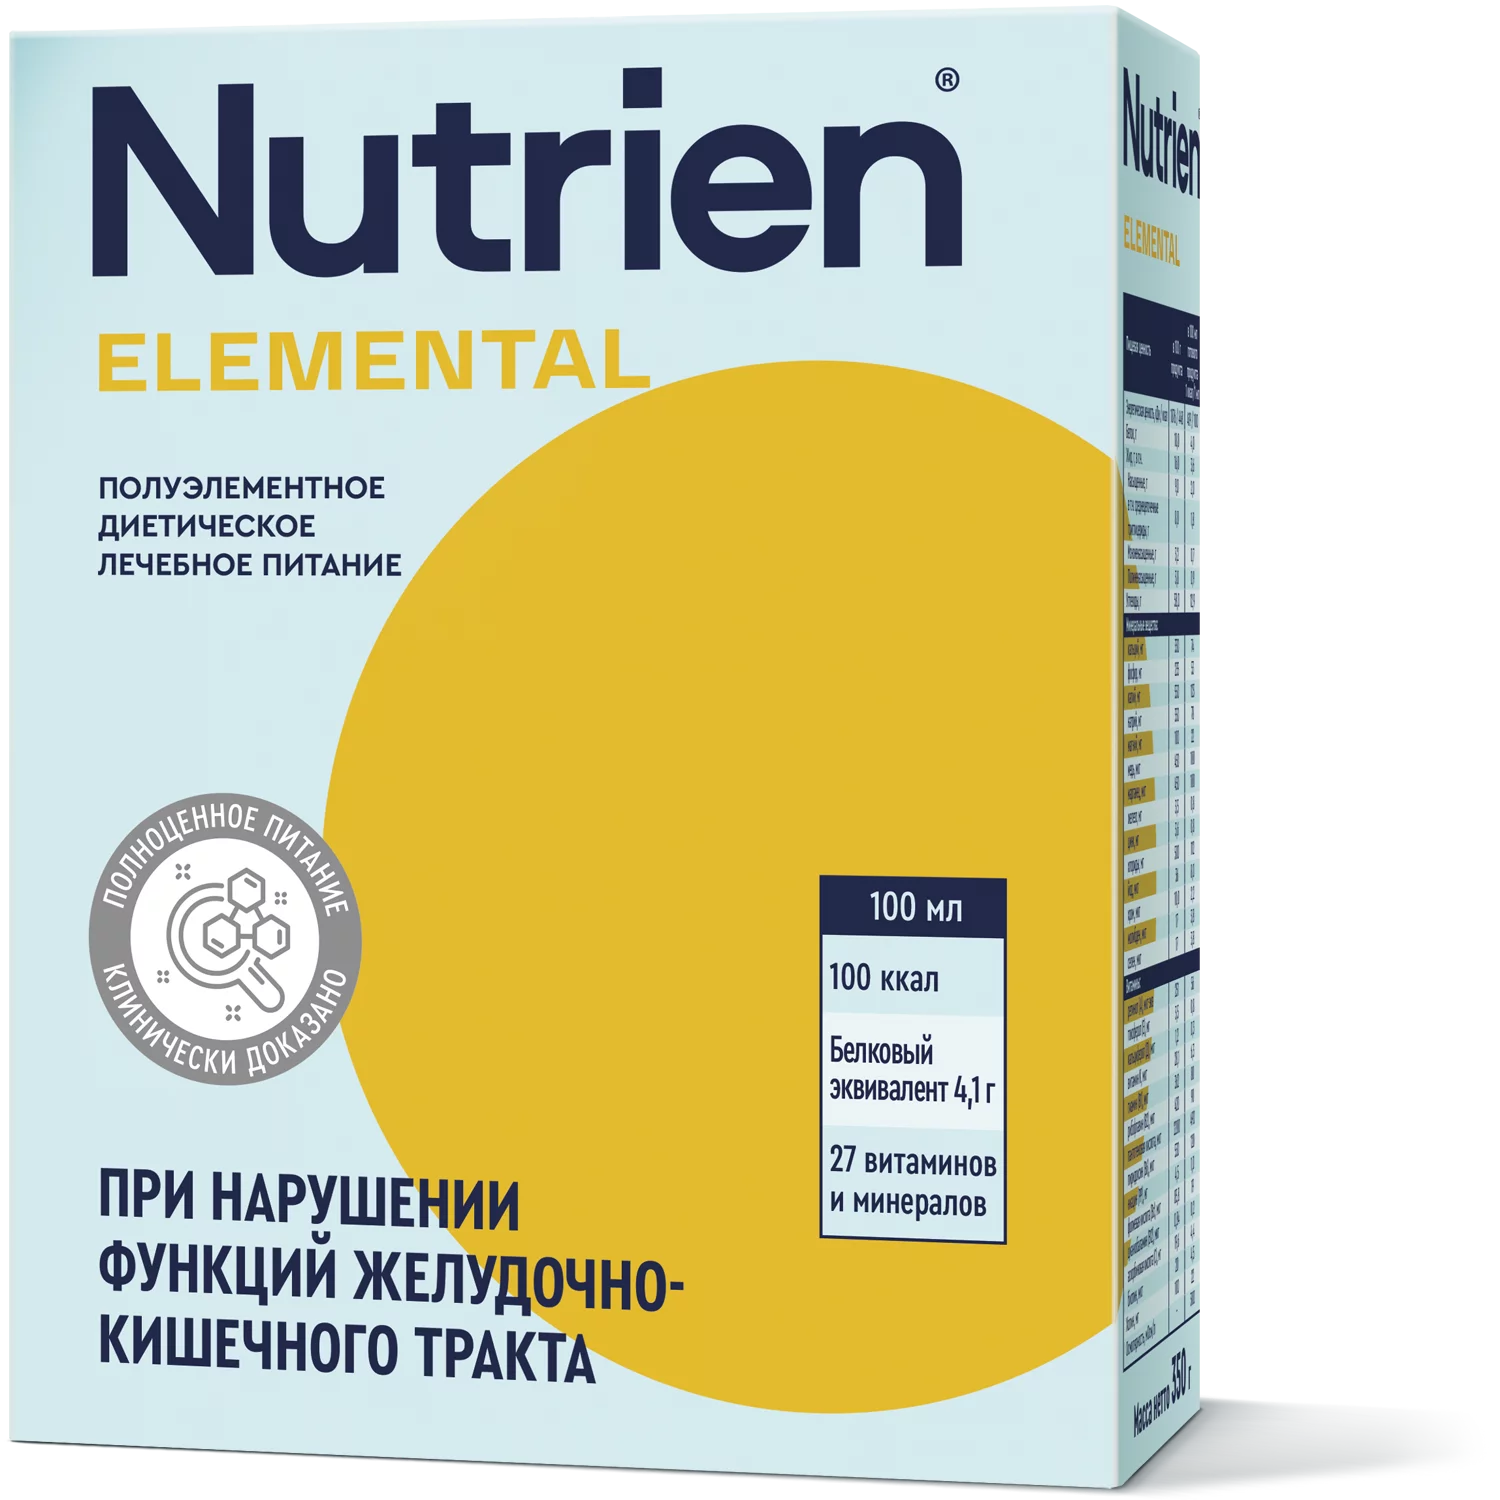 Nutrien Elemental